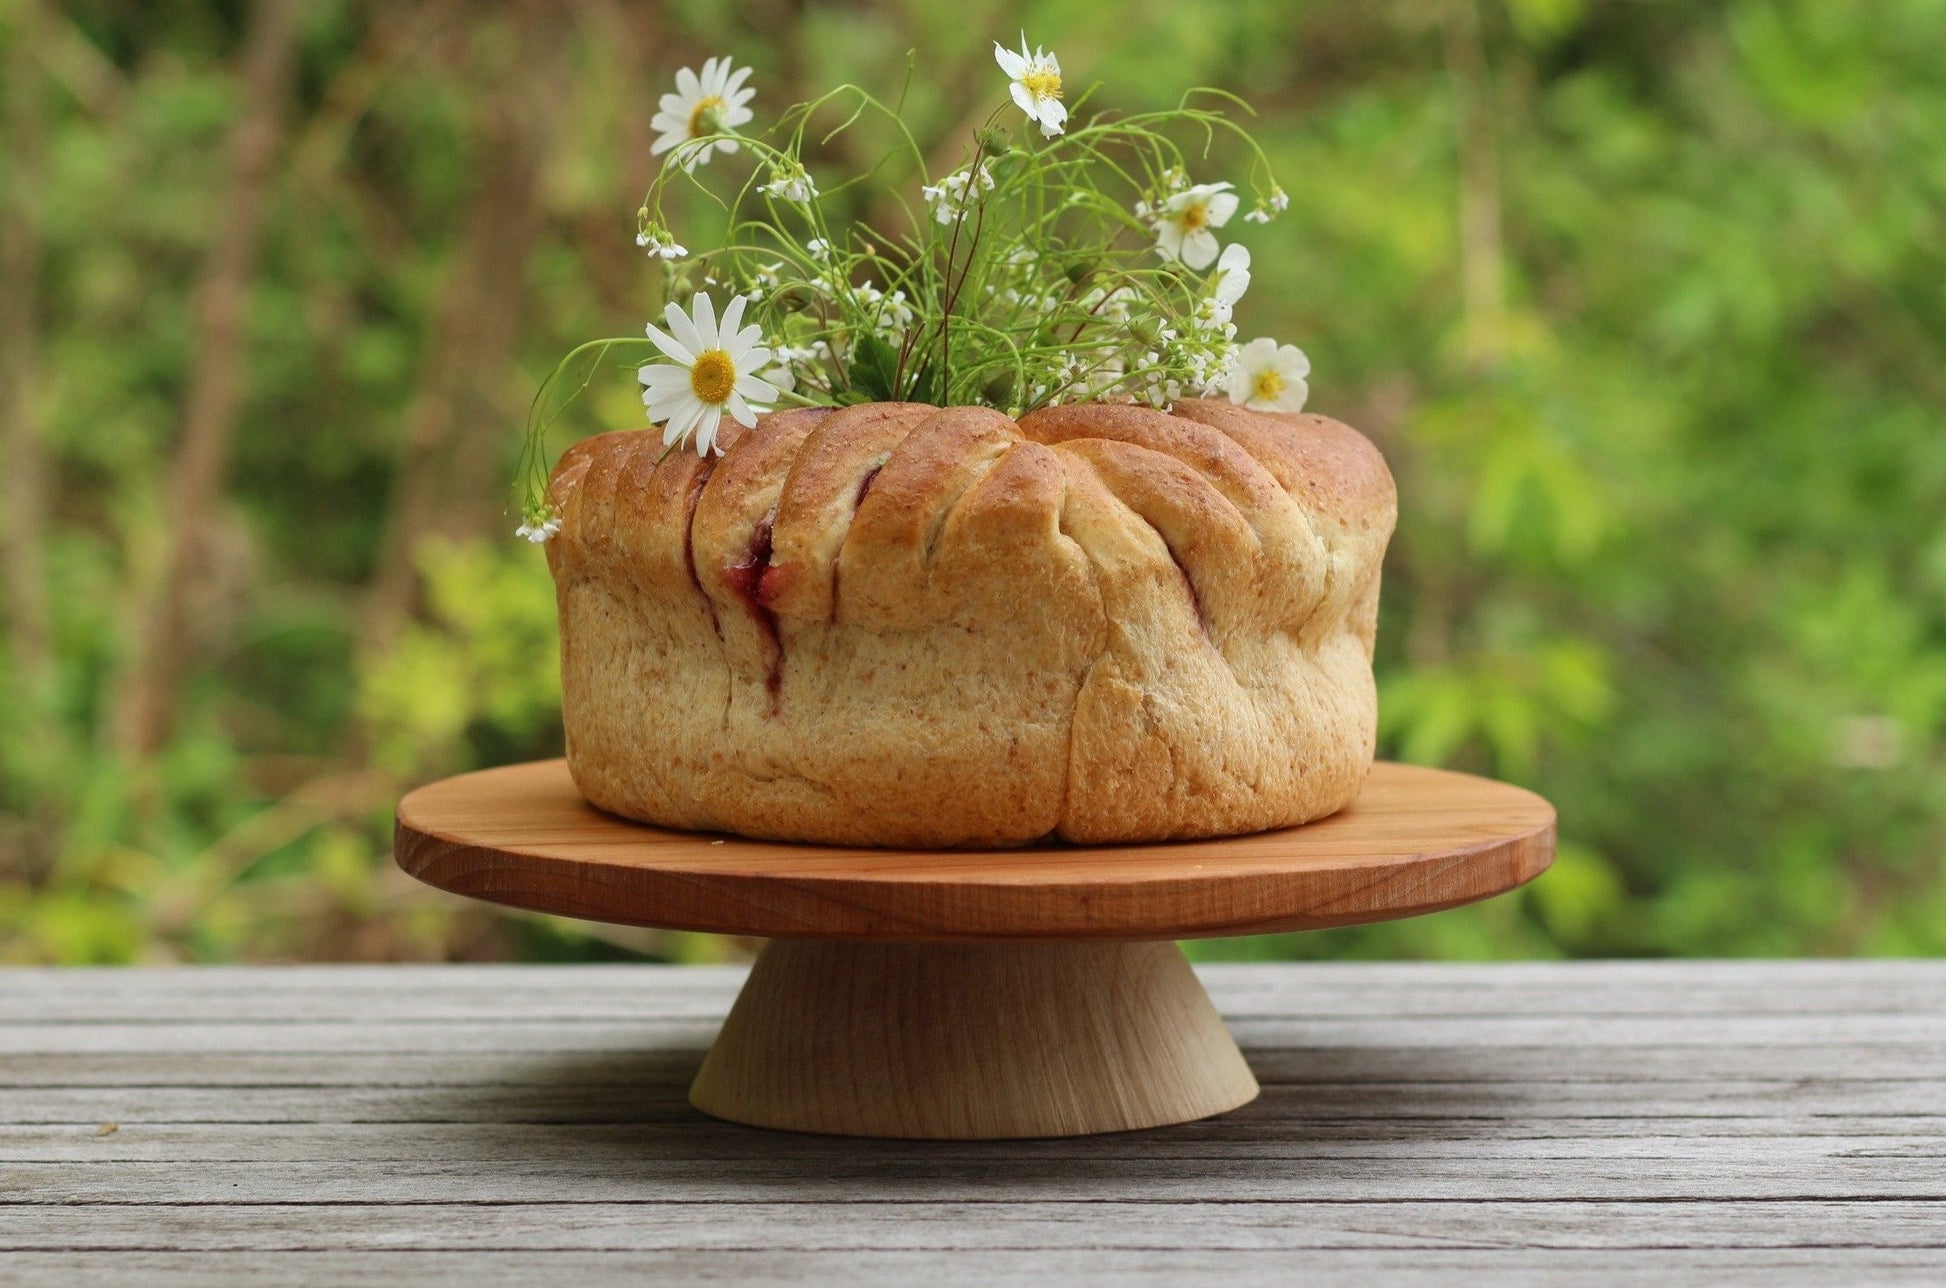 alzata per torte in legno di ciliegio ed acero, wooden cakestand, fatto a mano, handmade by Giovelab